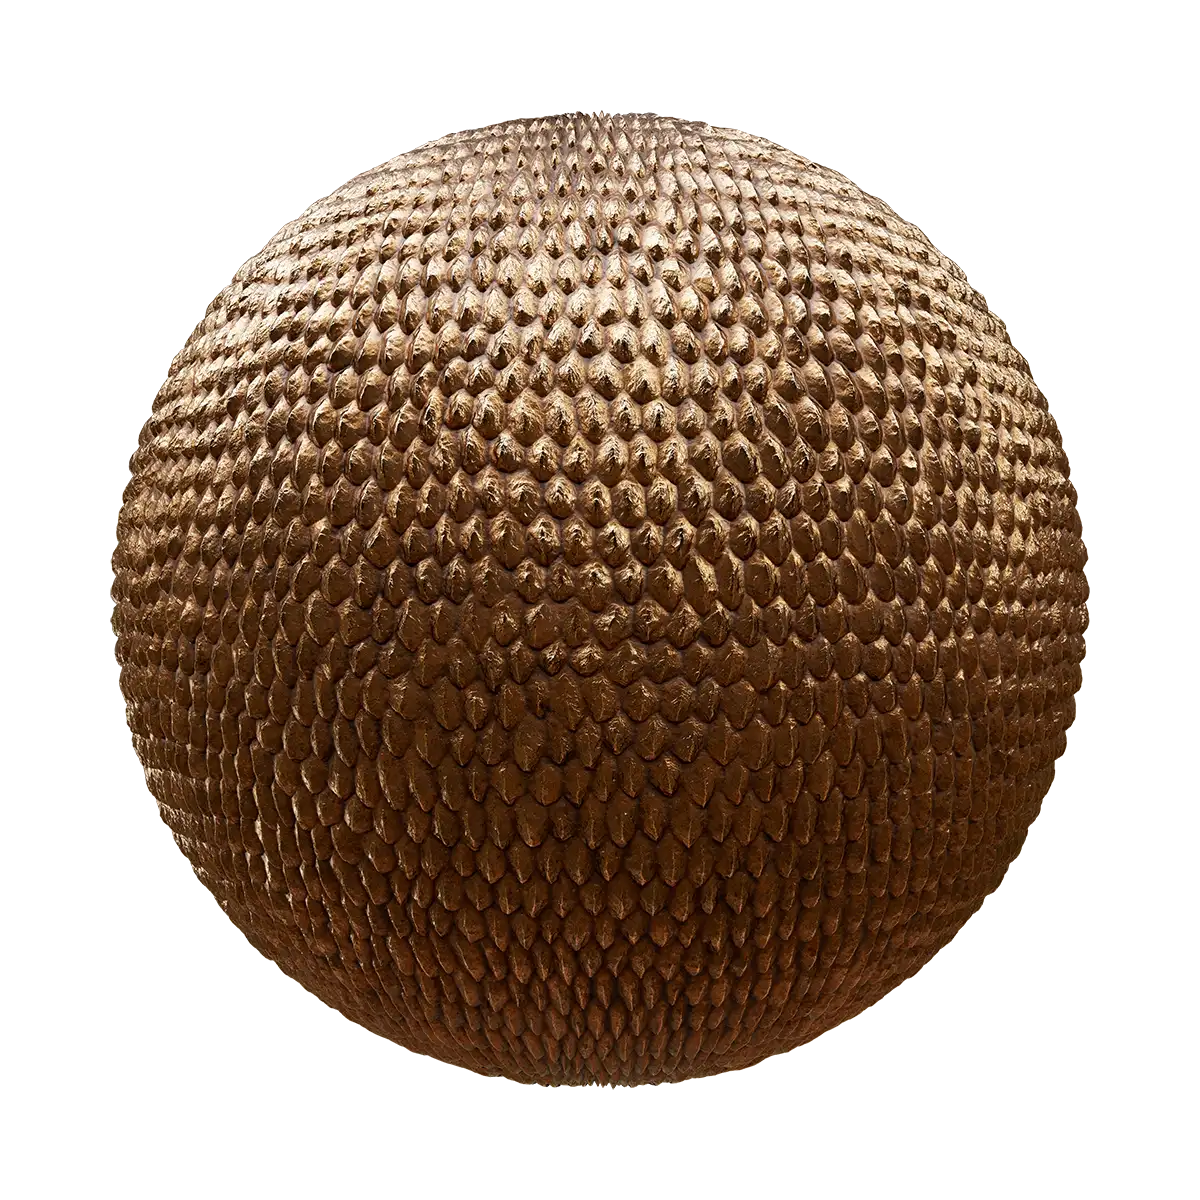 Golden Dragon Egg PBR Texture